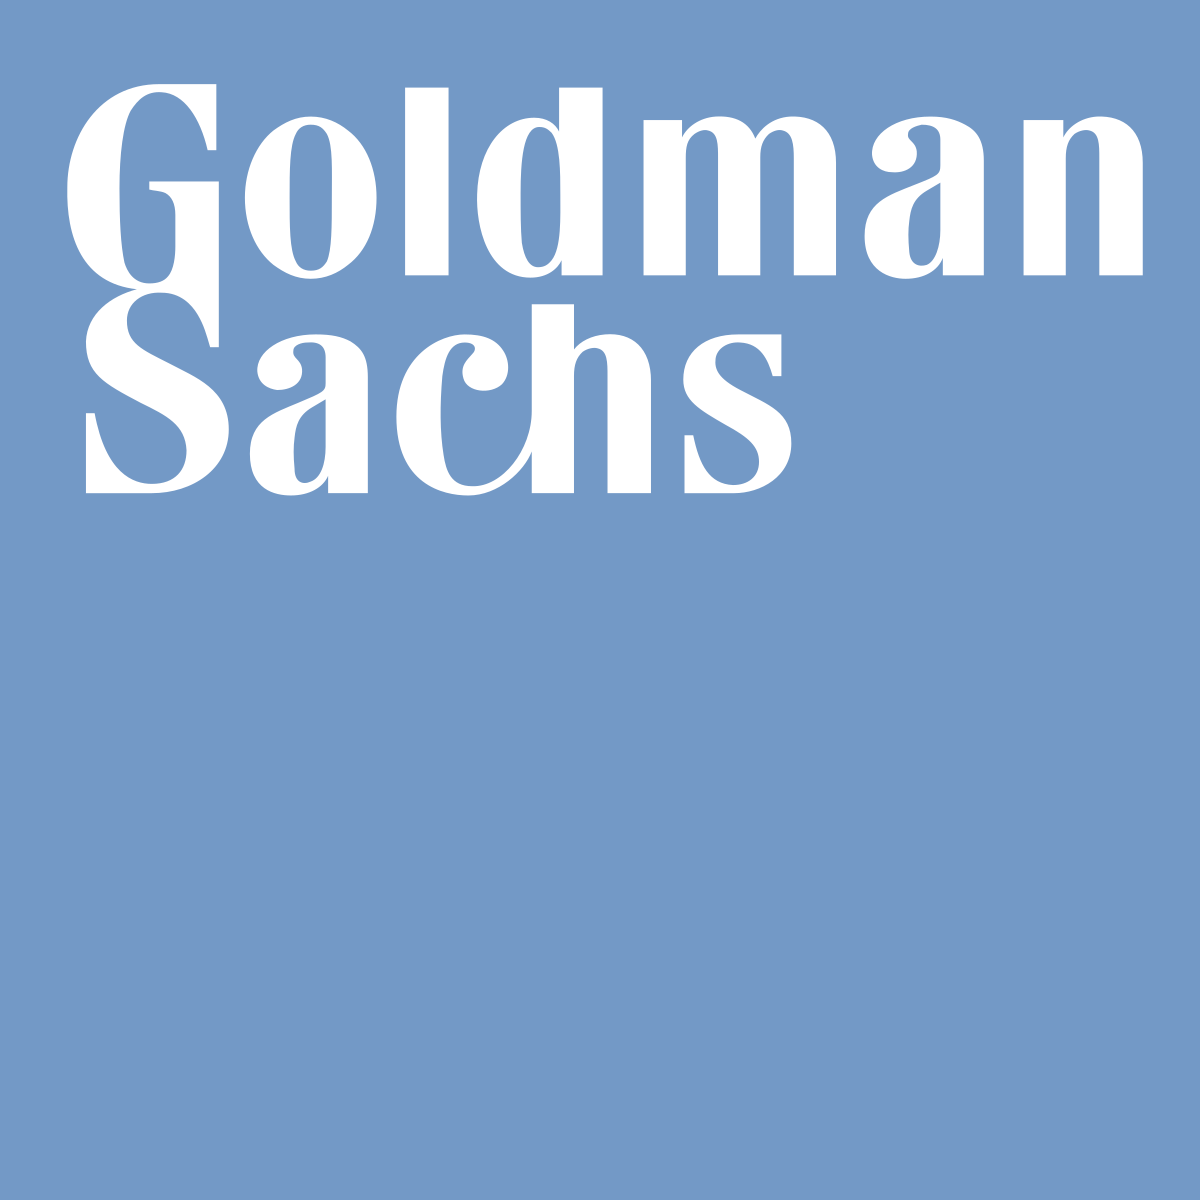 Display Image of Goldman Sachs